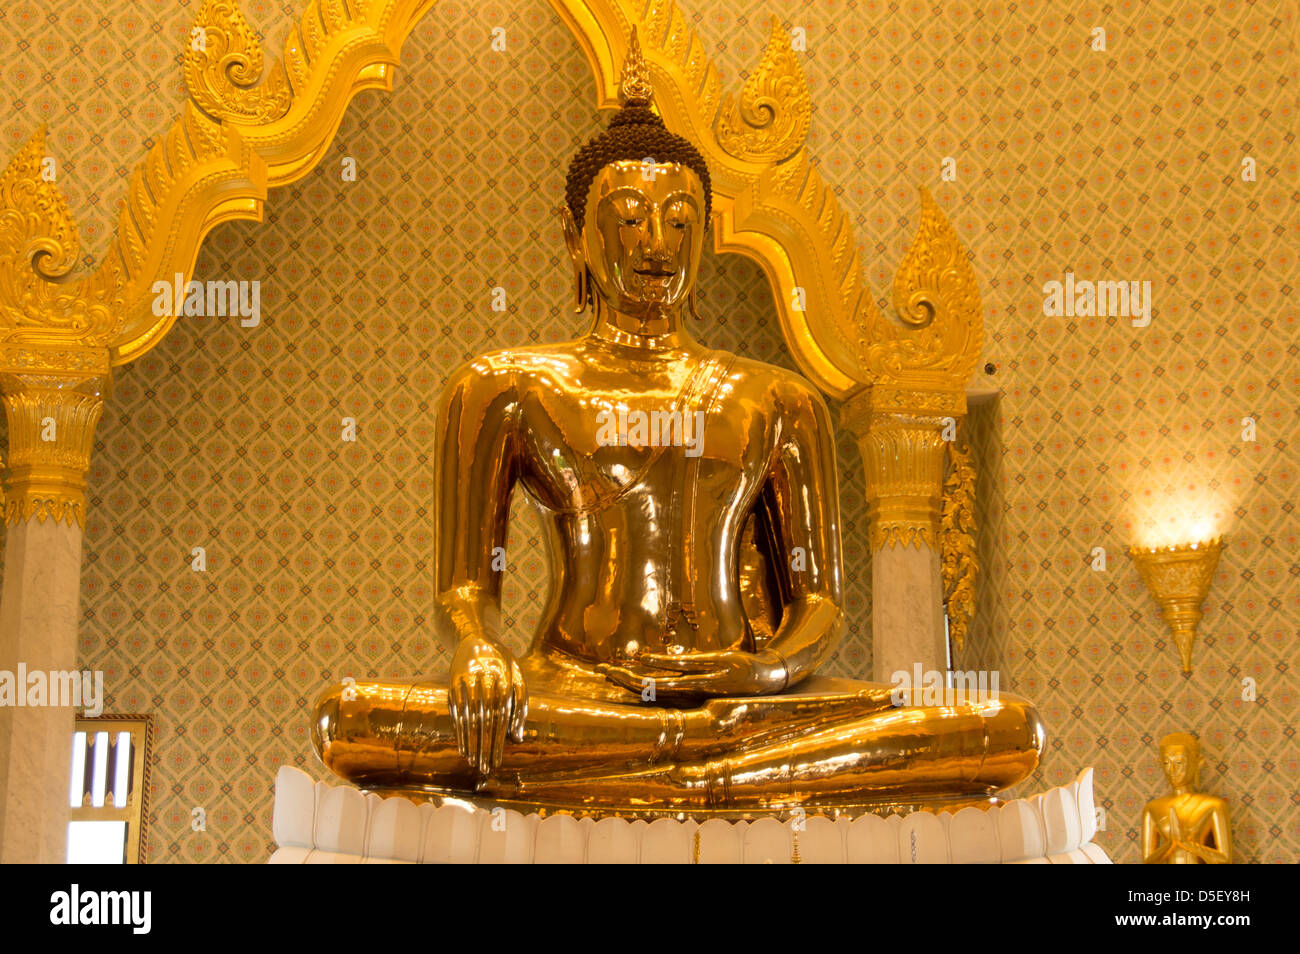 La statue de Bouddha en or massif Wat Traimit, Bangkok, Thaïlande Banque D'Images